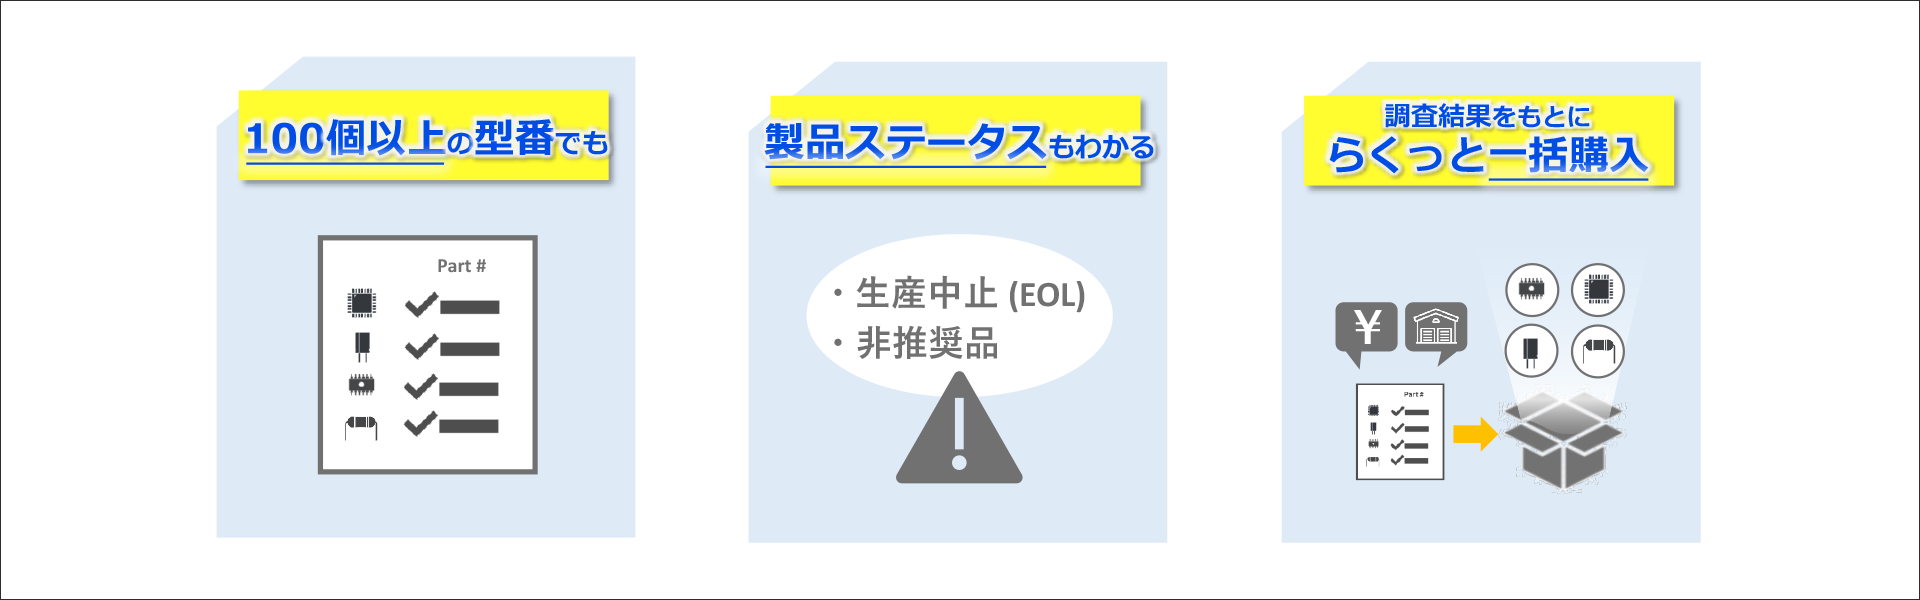 Kakaku/Xyco Search service image